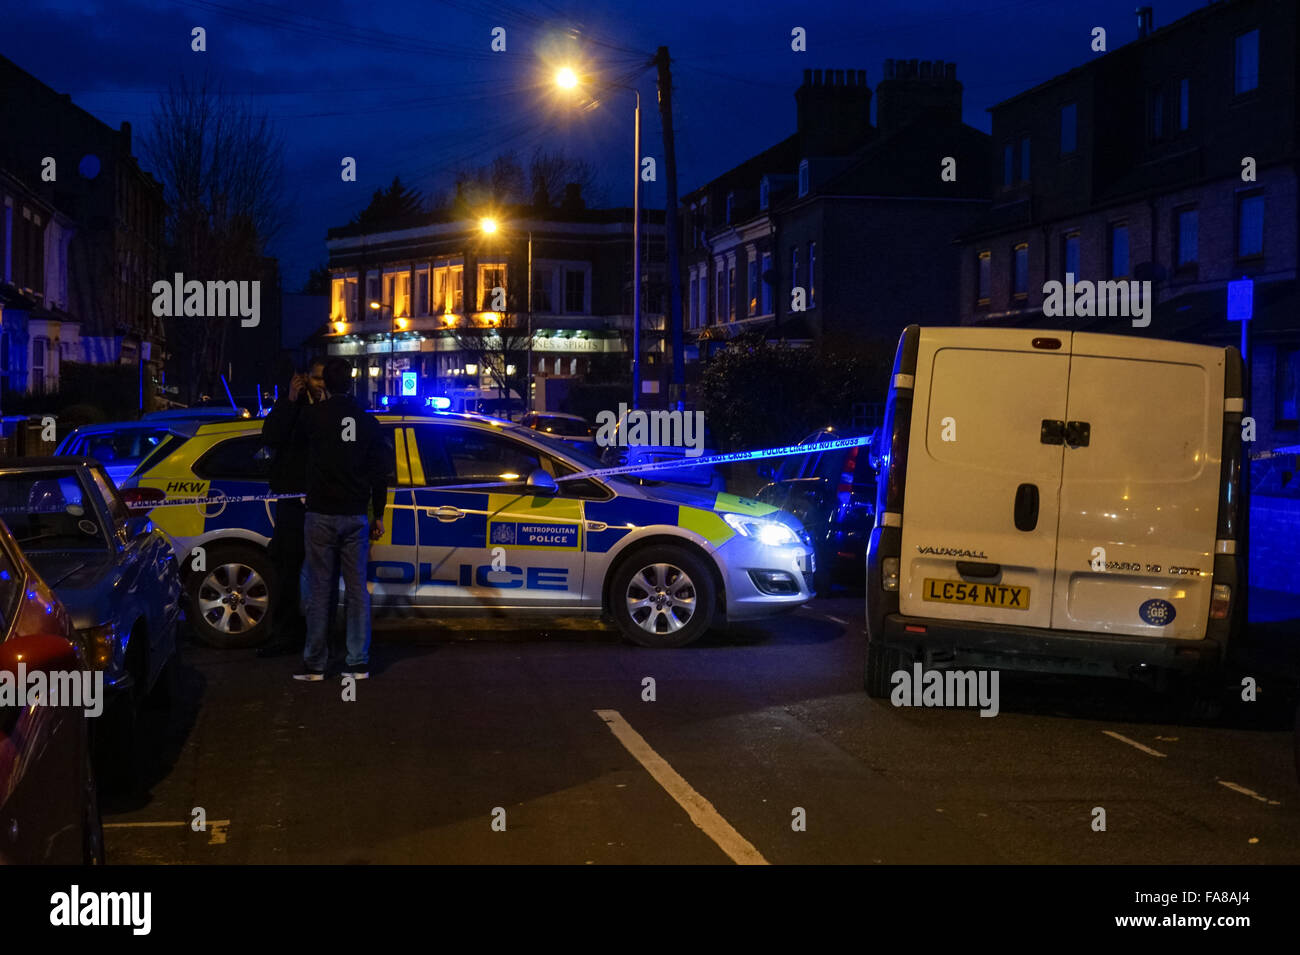 Les agents de police fixent la scène du crime après un poignard à Langthorne Road et North Birkbeck Road à Londres, Angleterre Royaume-Uni UK Banque D'Images